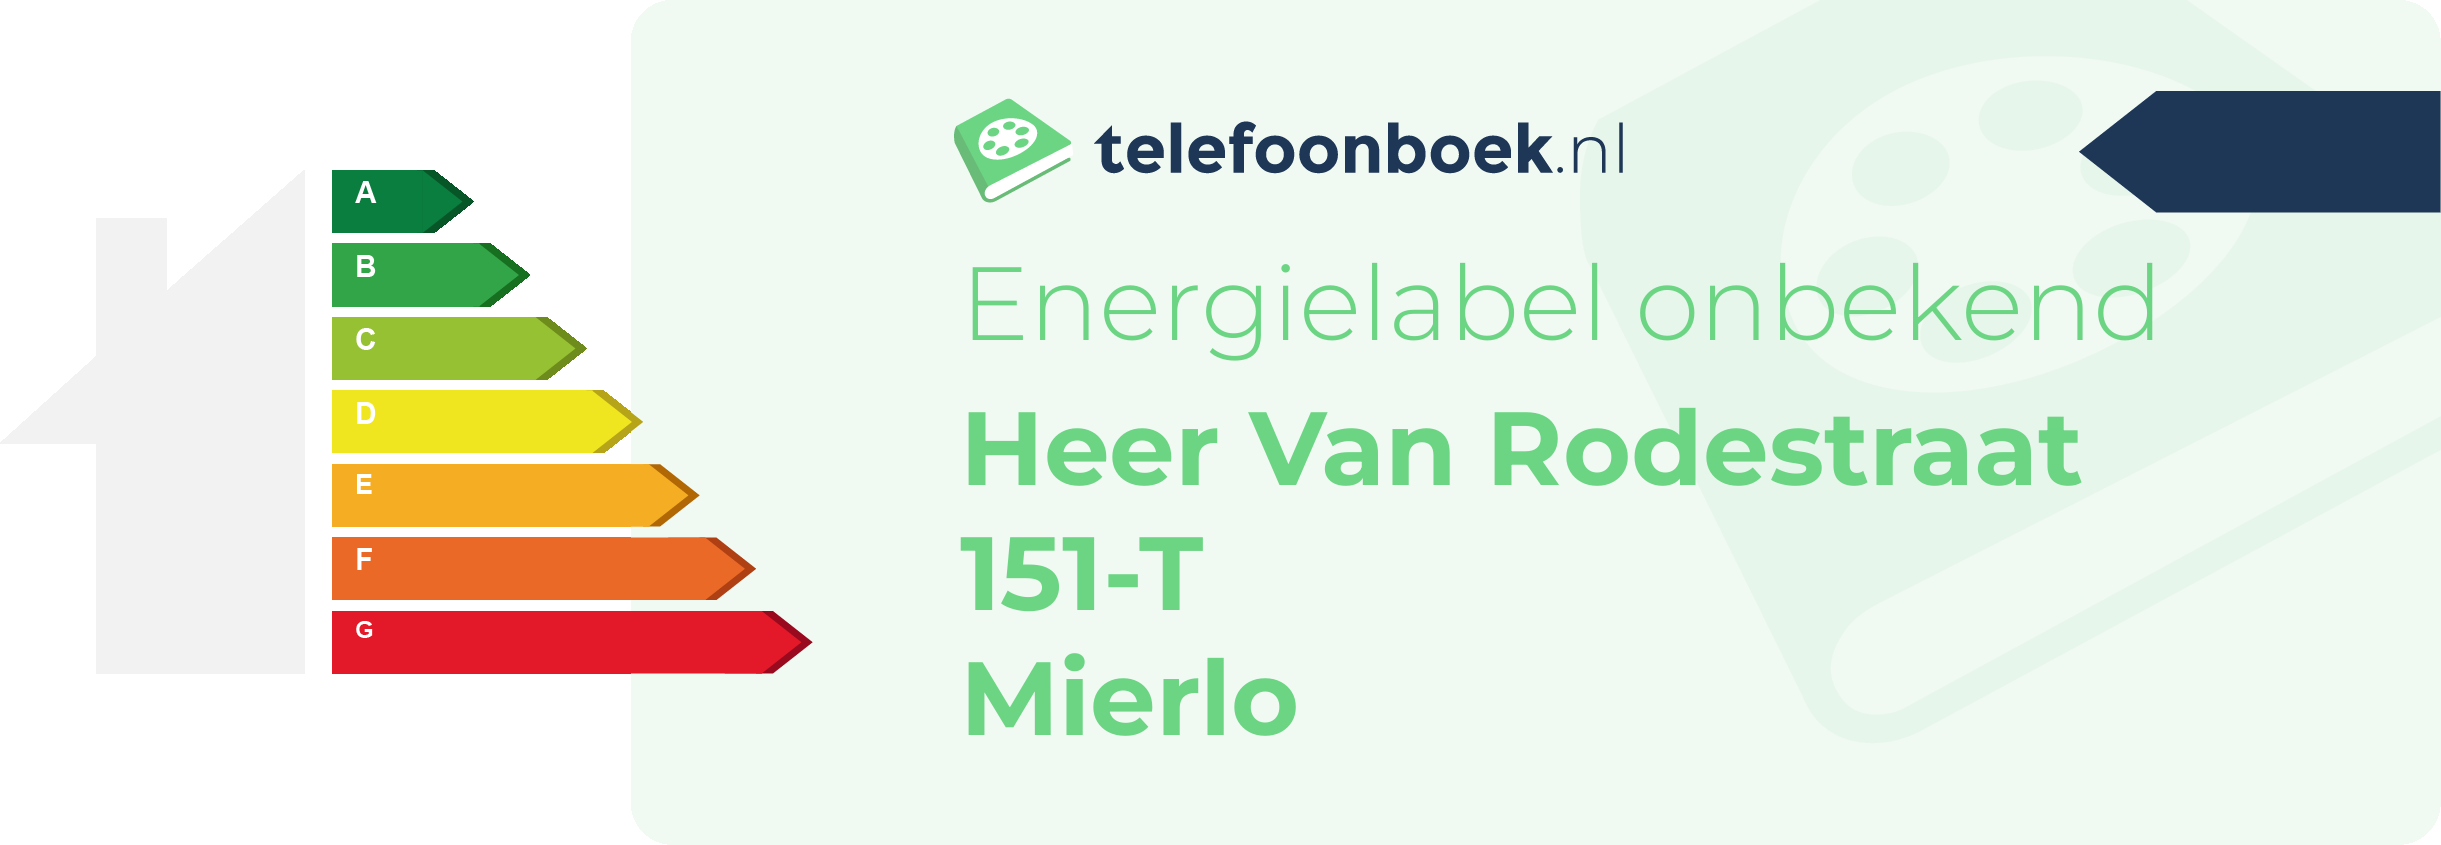 Energielabel Heer Van Rodestraat 151-T Mierlo